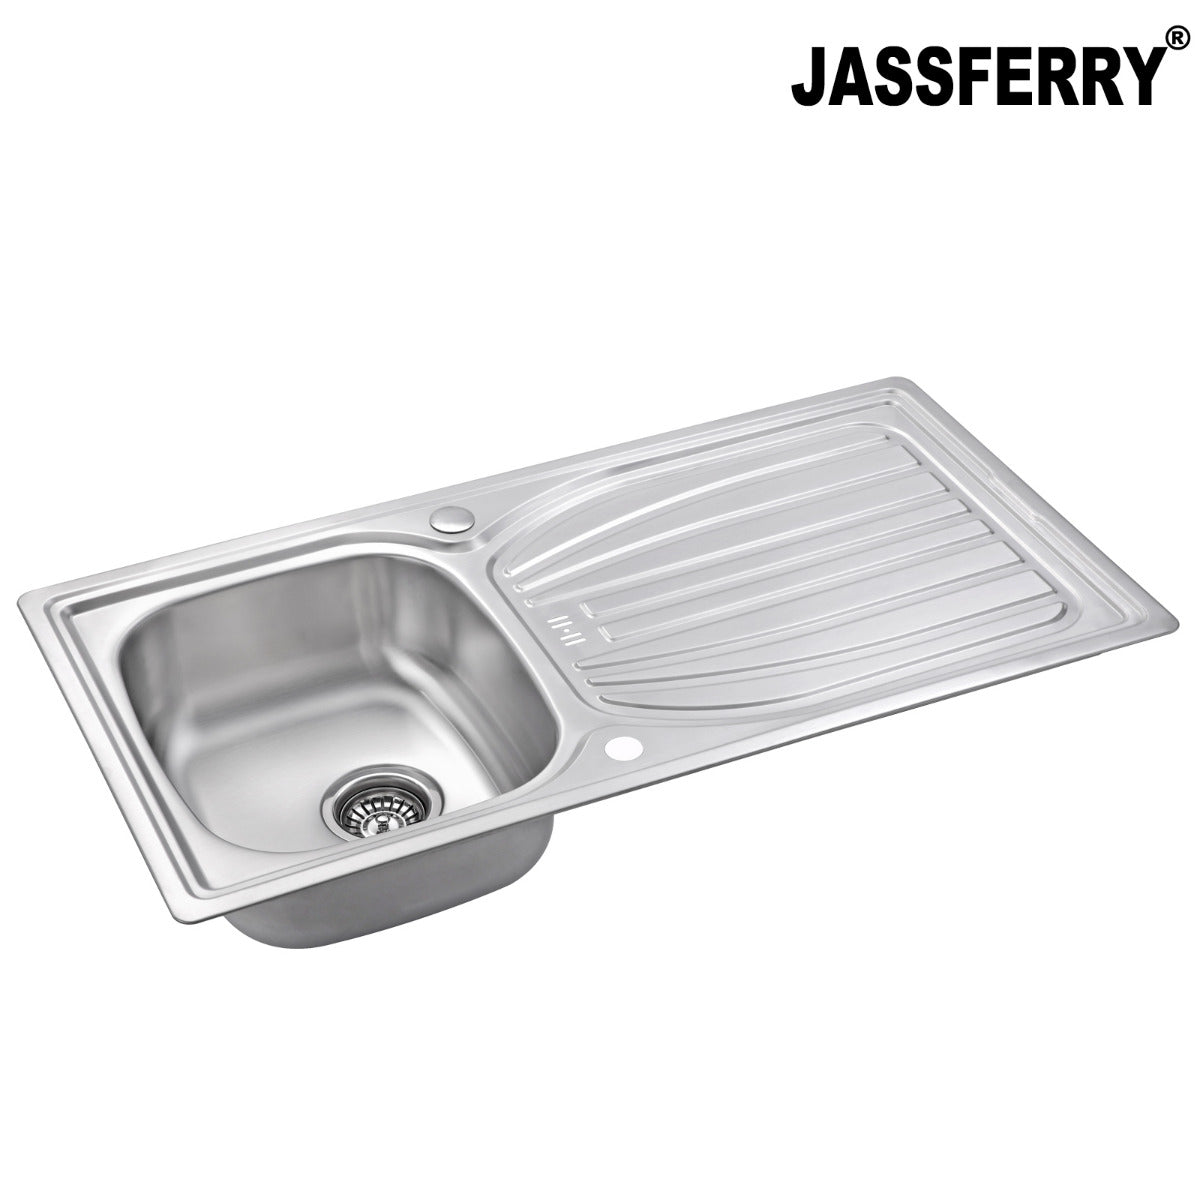 JassferryJASSFERRY Stainless Steel Kitchen Sink Reversible Drainer Deck Overflow HoleKitchen Sinks